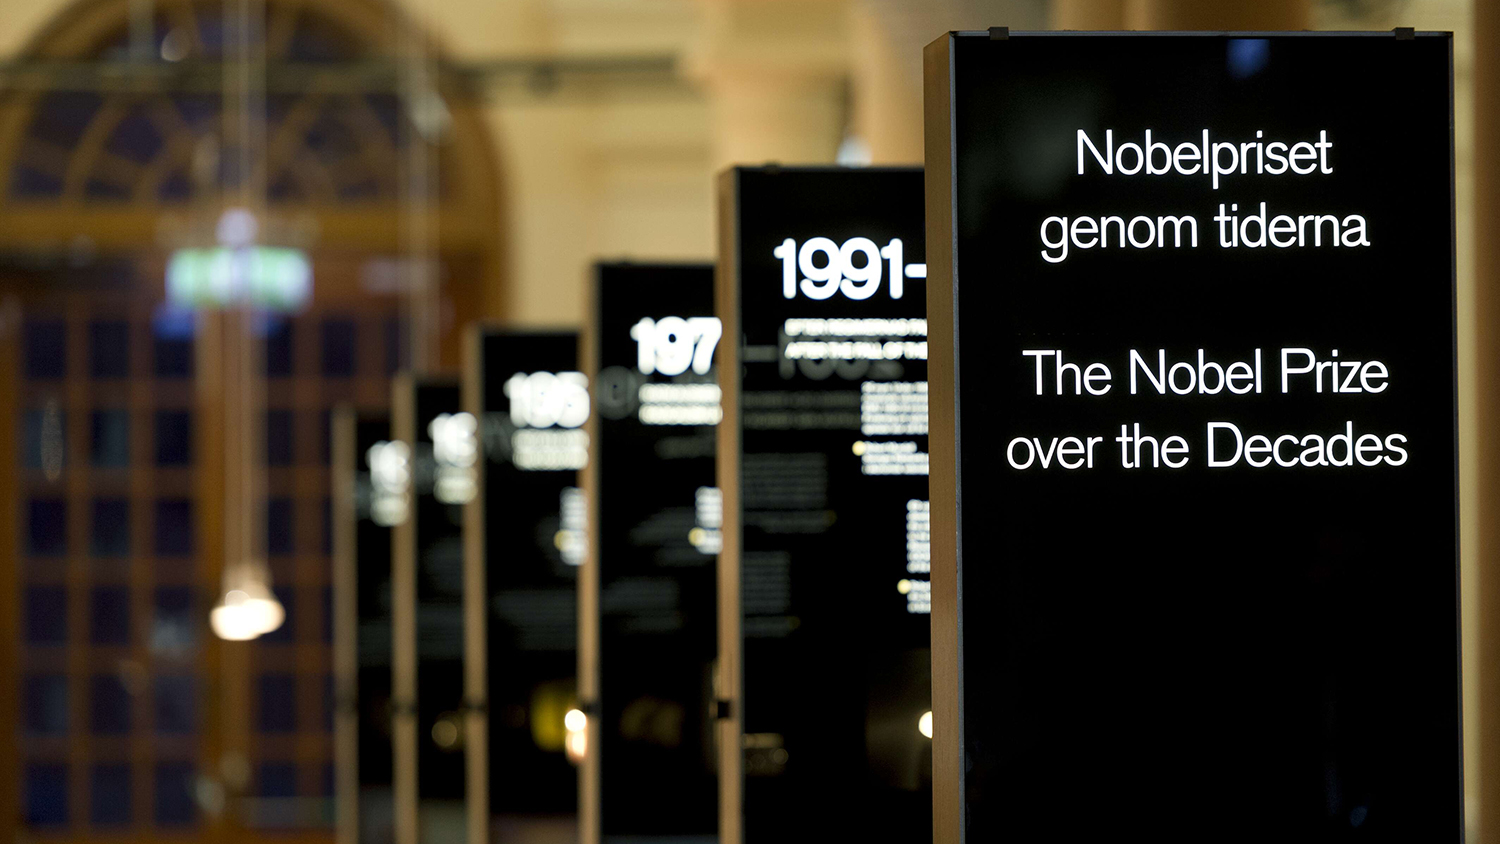 Svarta utställningsskyltar där texten på den närmaste lyder "Nobelpriset genom tiderna" 